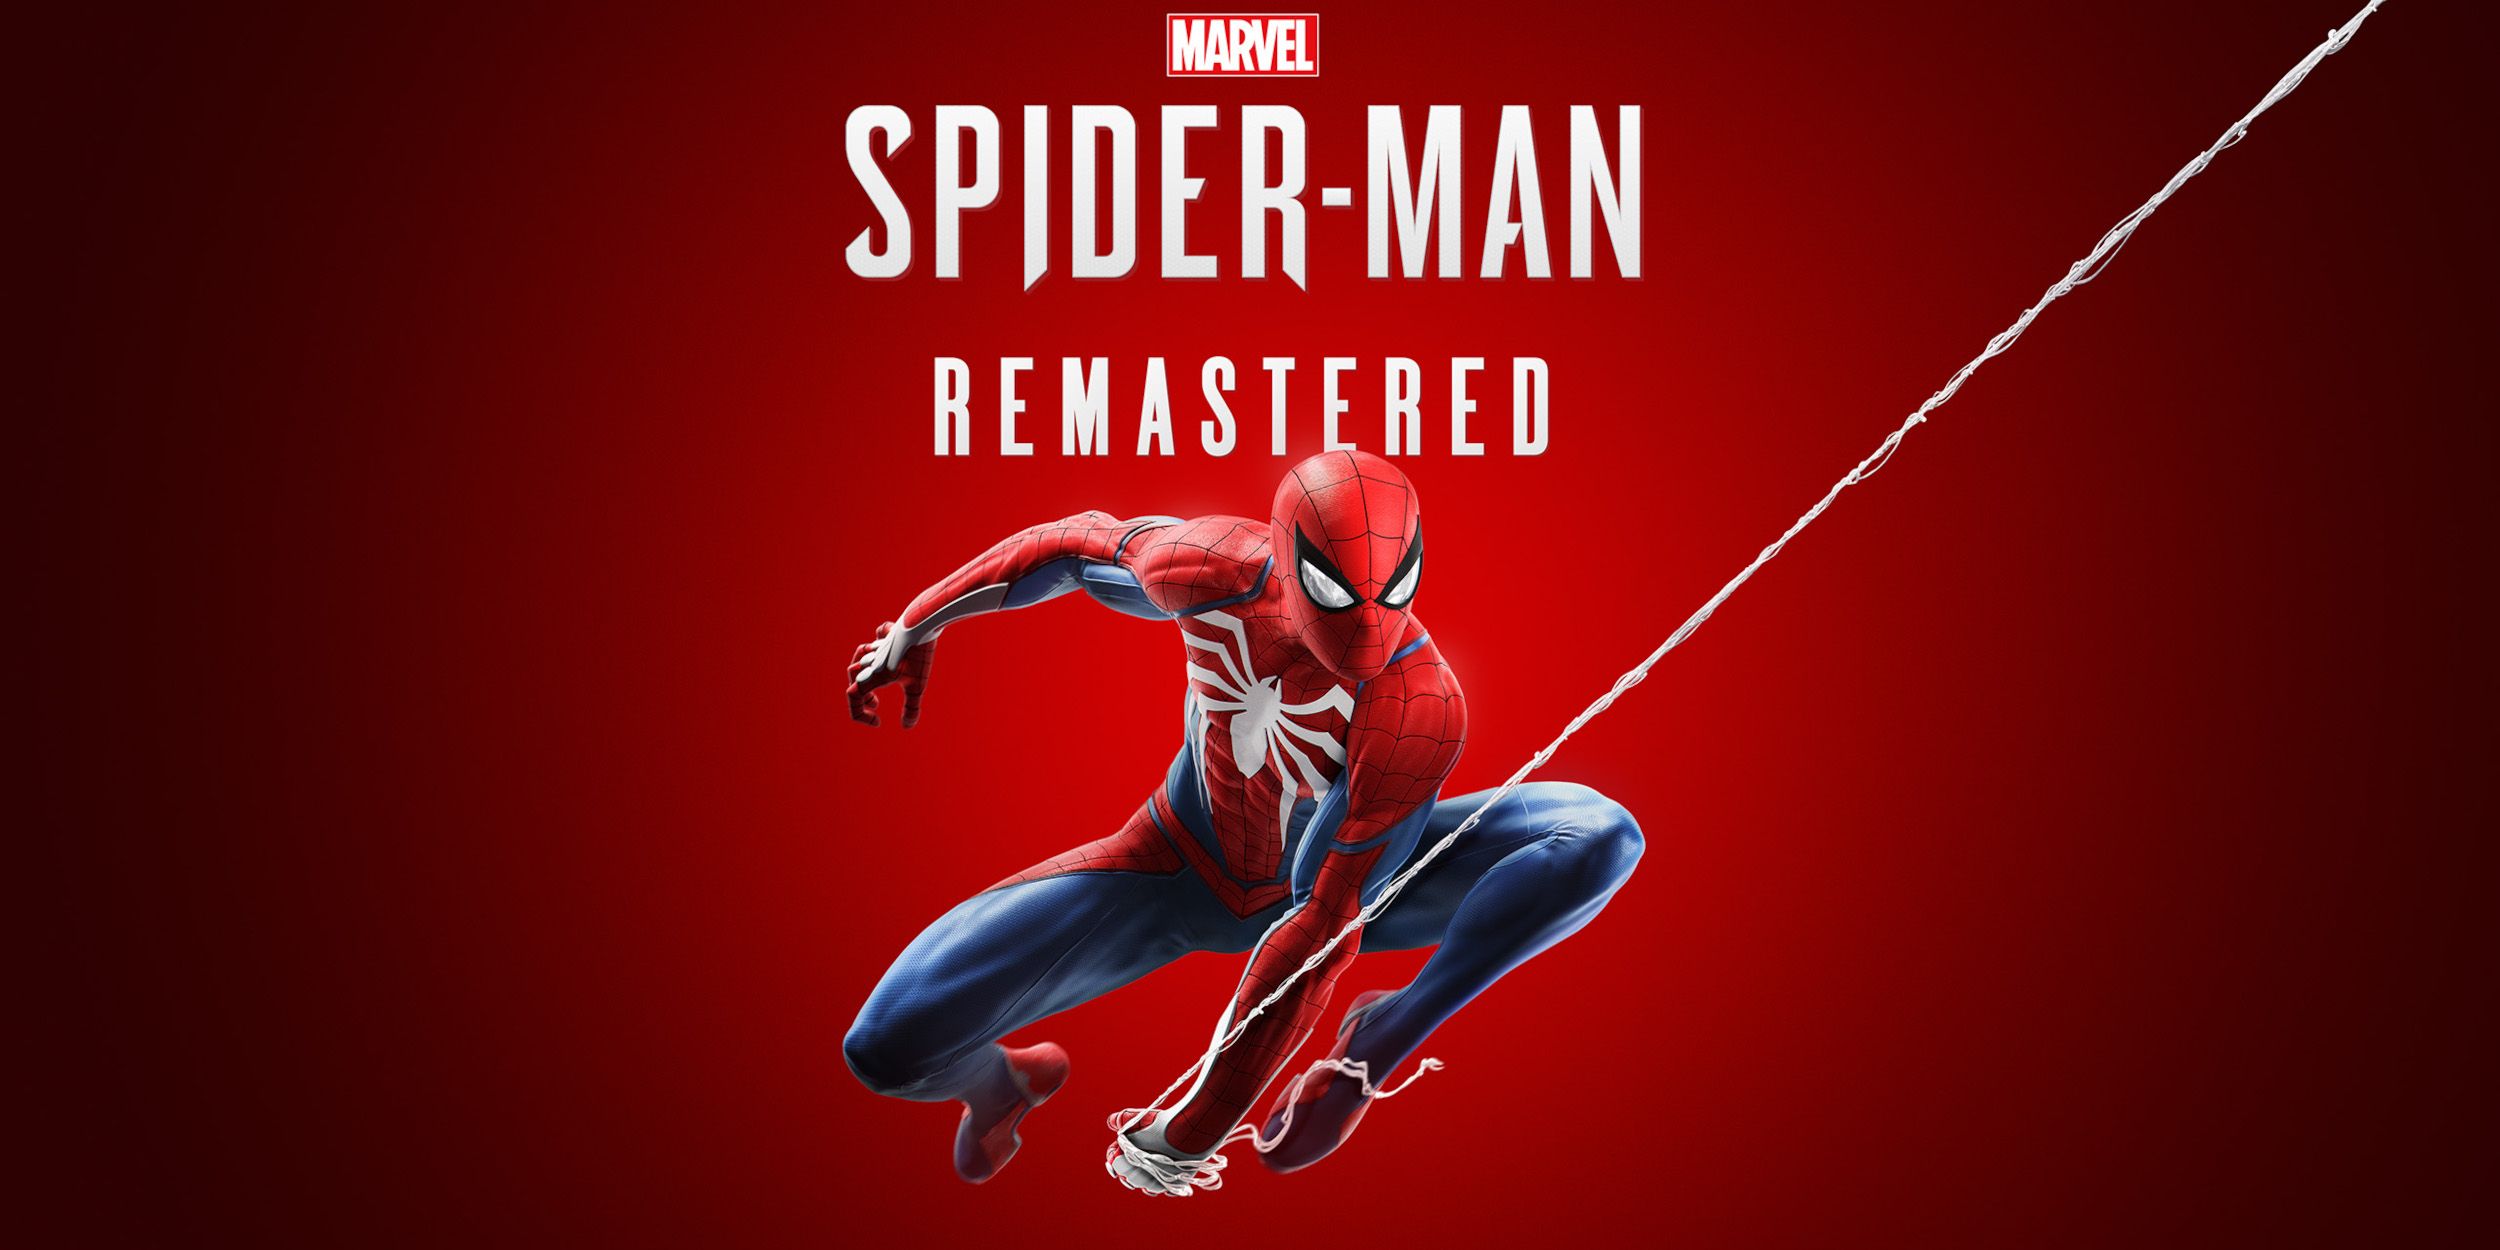 Revisión de PC de Marvel’s Spider-Man Remastered: maravillosa acción de lanzar telarañas